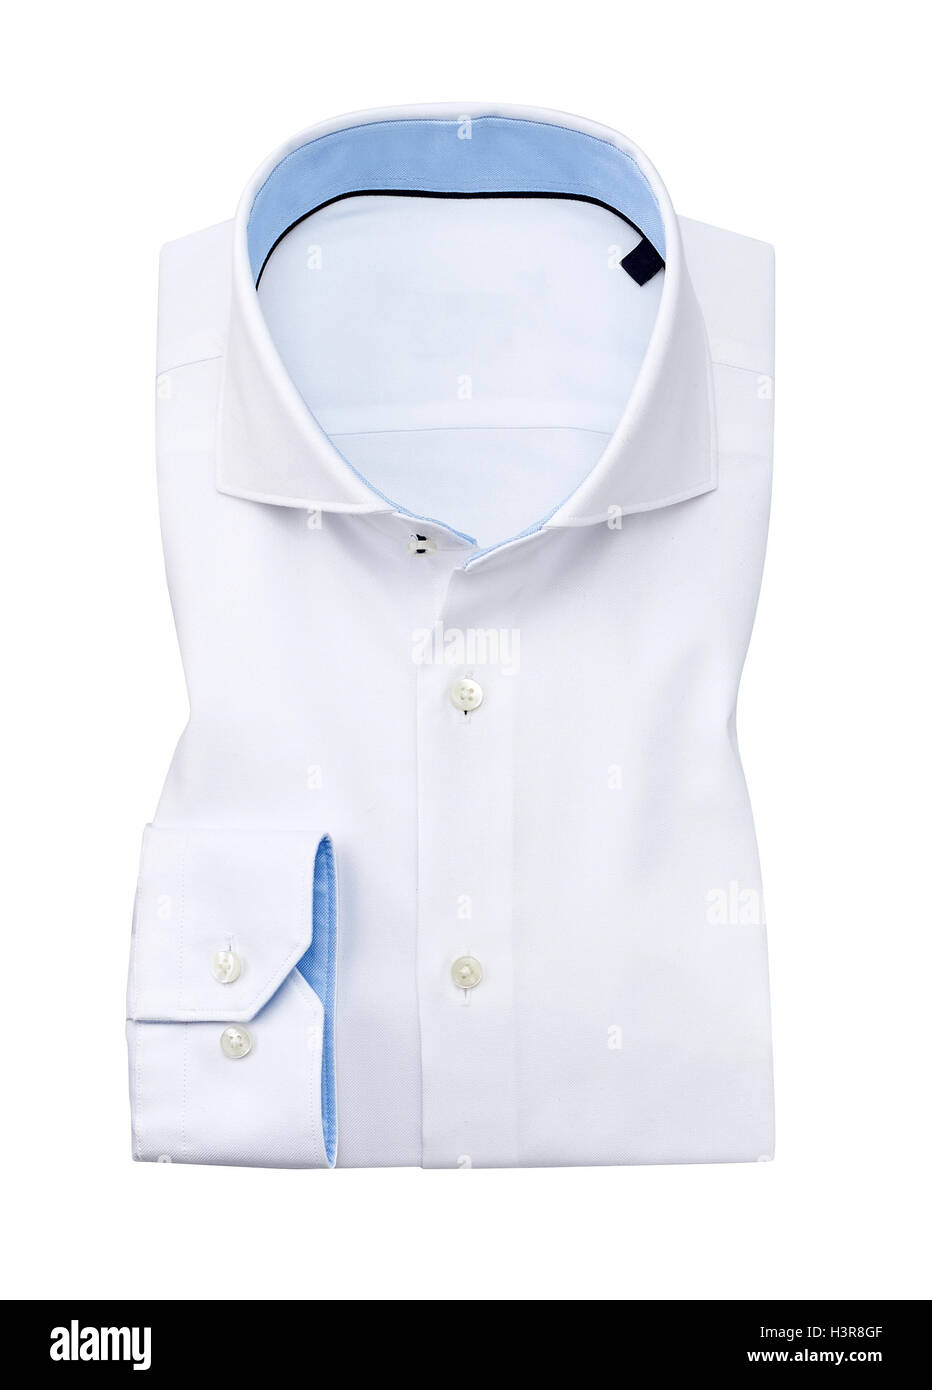 Camisa blanca plegado plano, aislado en blanco.con trazado de recorte Foto de stock